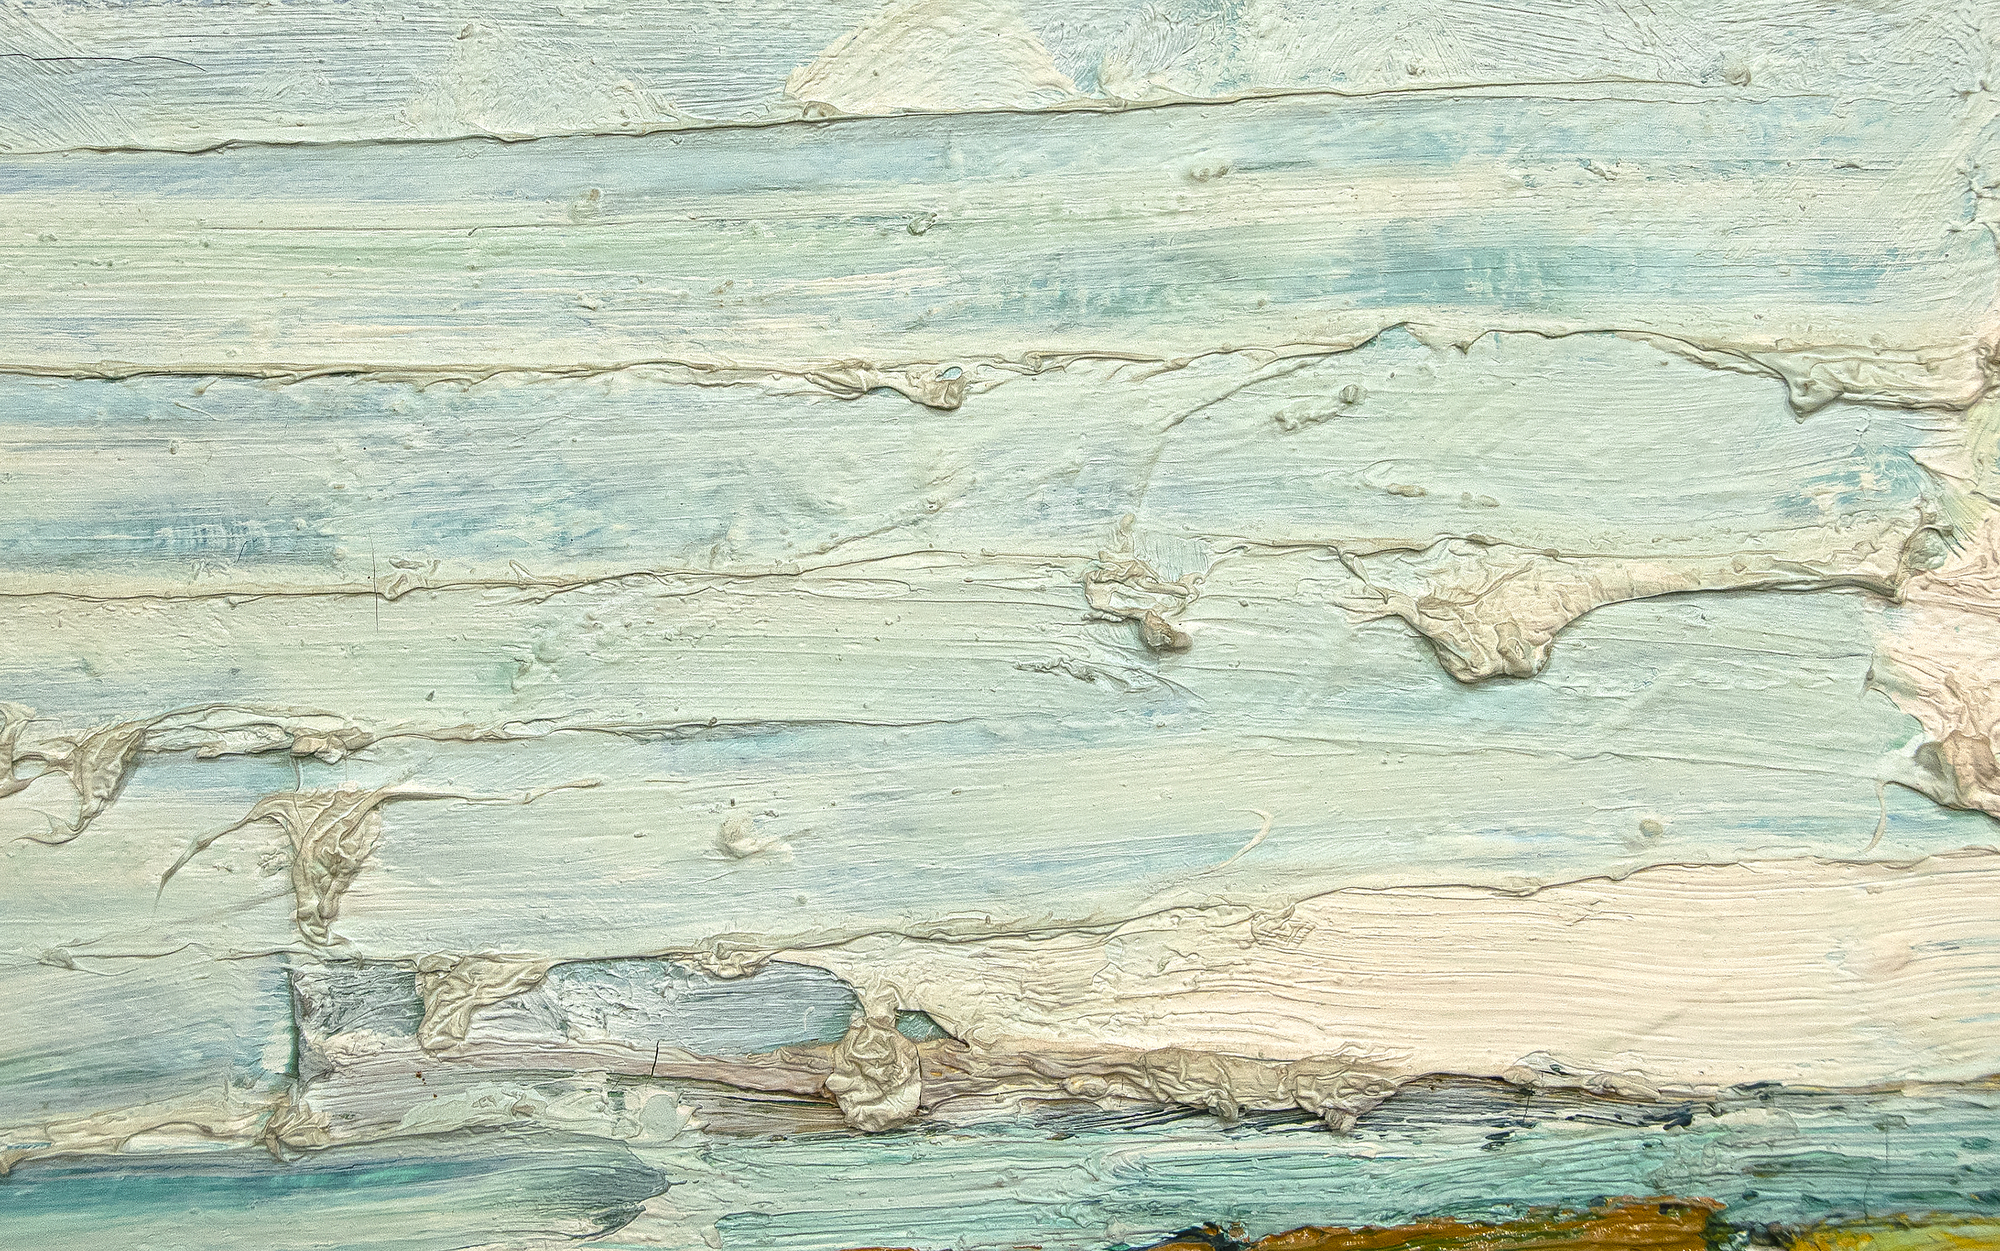 El almuerzo del artista del Área de la Bahía Roland Petersen es un óleo sobre lienzo de 1961, un año crítico para su serie de Picnic más conocida. Su obra de este período se caracteriza por su espeso impasto y su rico colorido. Profundamente influenciado por estudios con Hans Hoffman, Petersen experimentó con la abstracción, mezclando aquí estilos abstractos y figurativos. Pintado cuando Petersen tenía 35 años, Luncheon se encuentra dentro de un marco de tiempo que incluye su exposición individual agotada en 1962 en la Staempfli Gallery de Nueva York, su exposición individual en Esther-Robles en Los Ángeles, y la beca Guggenheim Fellowship que le dio la oportunidad de estudiar en París.